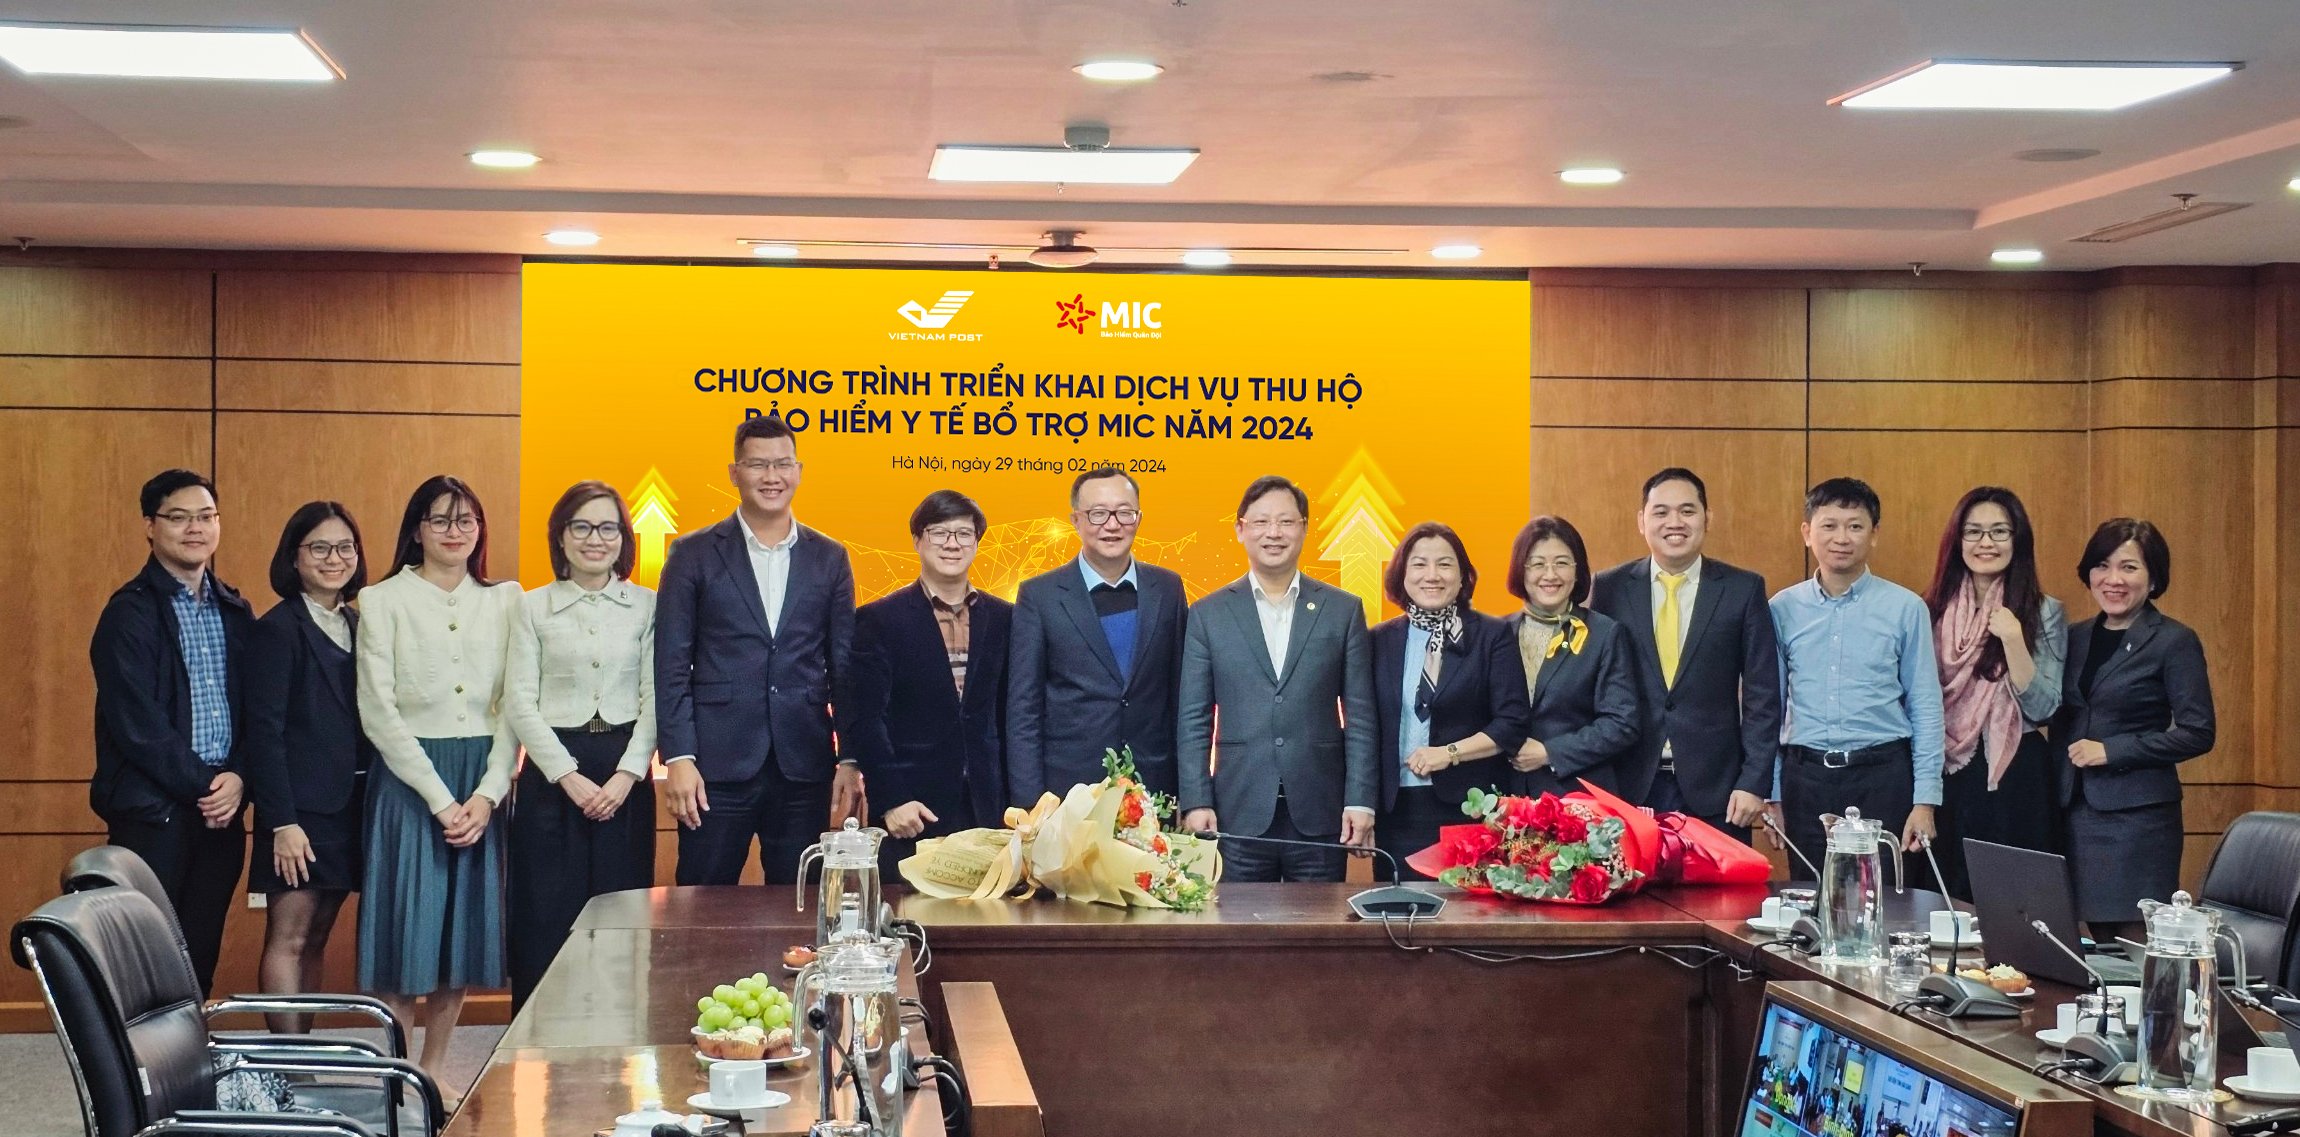 MIC và Vietnam Post phối hợp triển khai dịch vụ thu hộ bảo hiểm y tế bổ trợ năm 2024